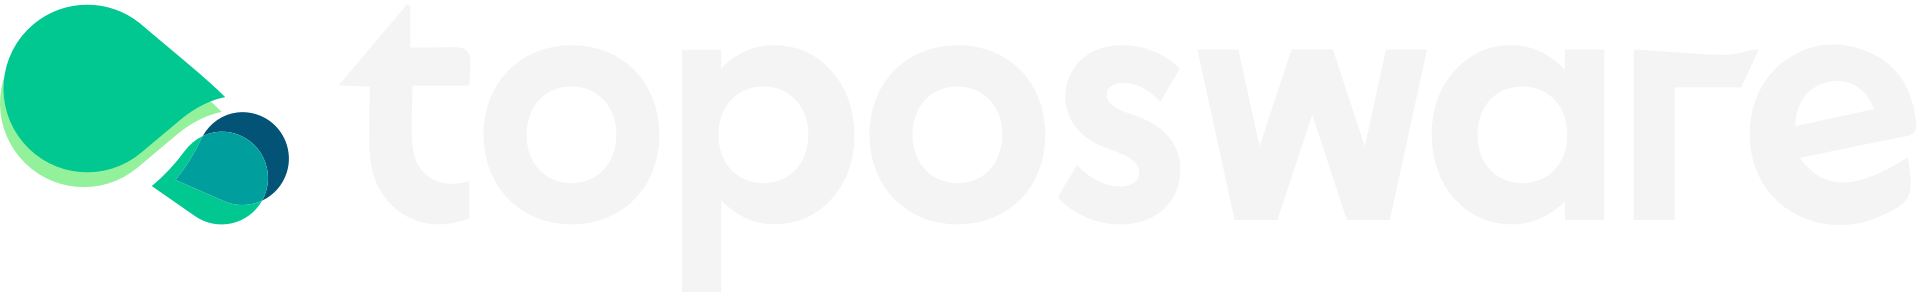 Toposware Logo Horizontal